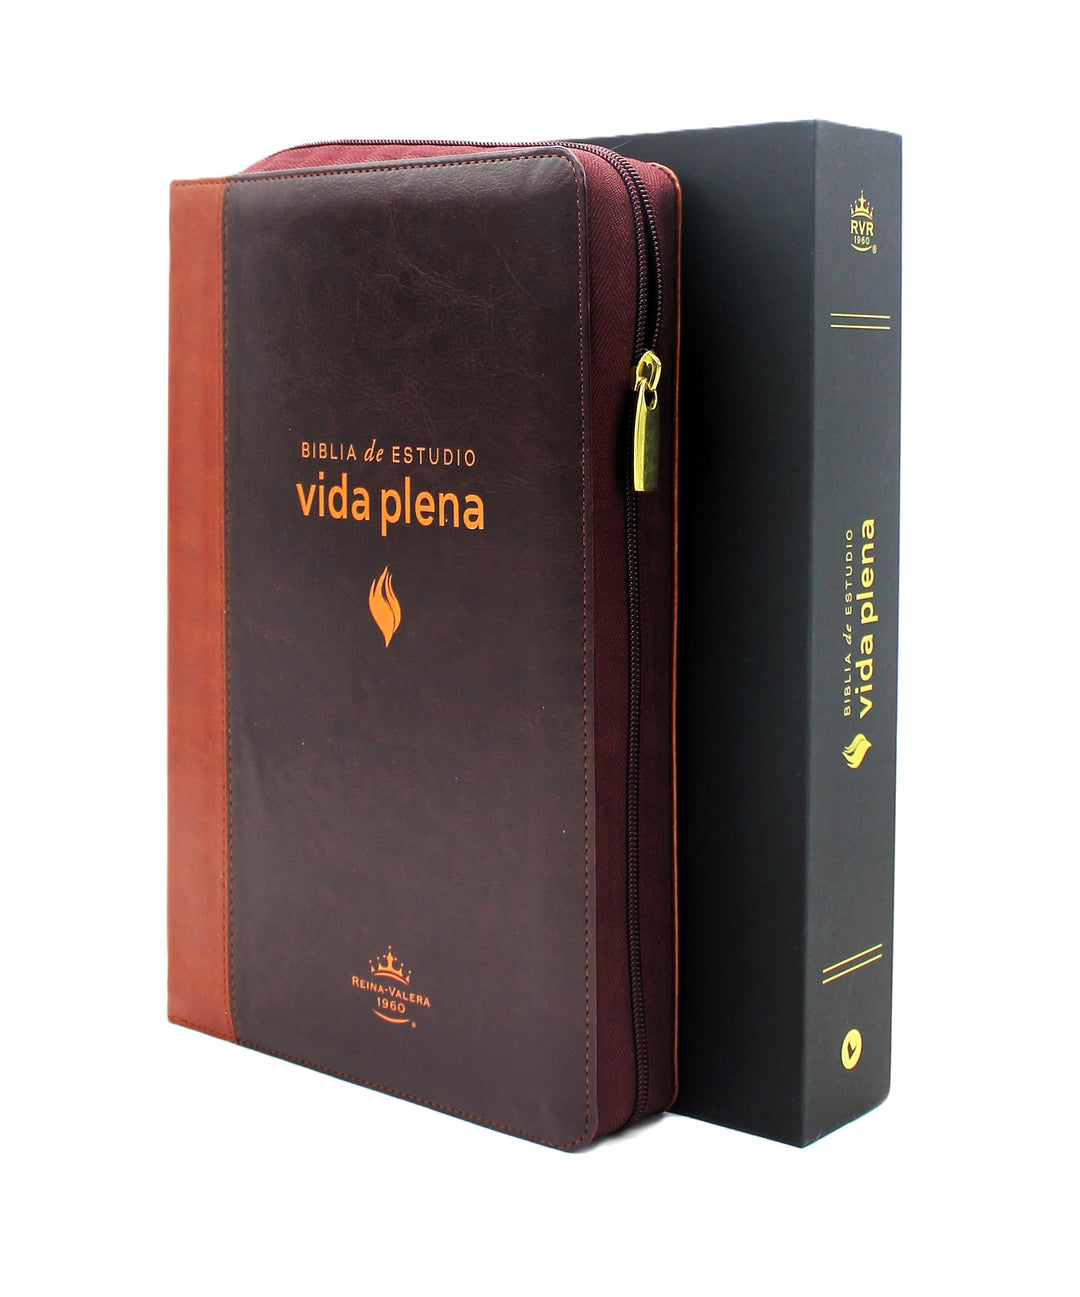 Biblia de Estudio Reina Valera 1960 Vida Plena con Cierre Indice en color Cafe y Cafe Claro y Estuche de Proteccion